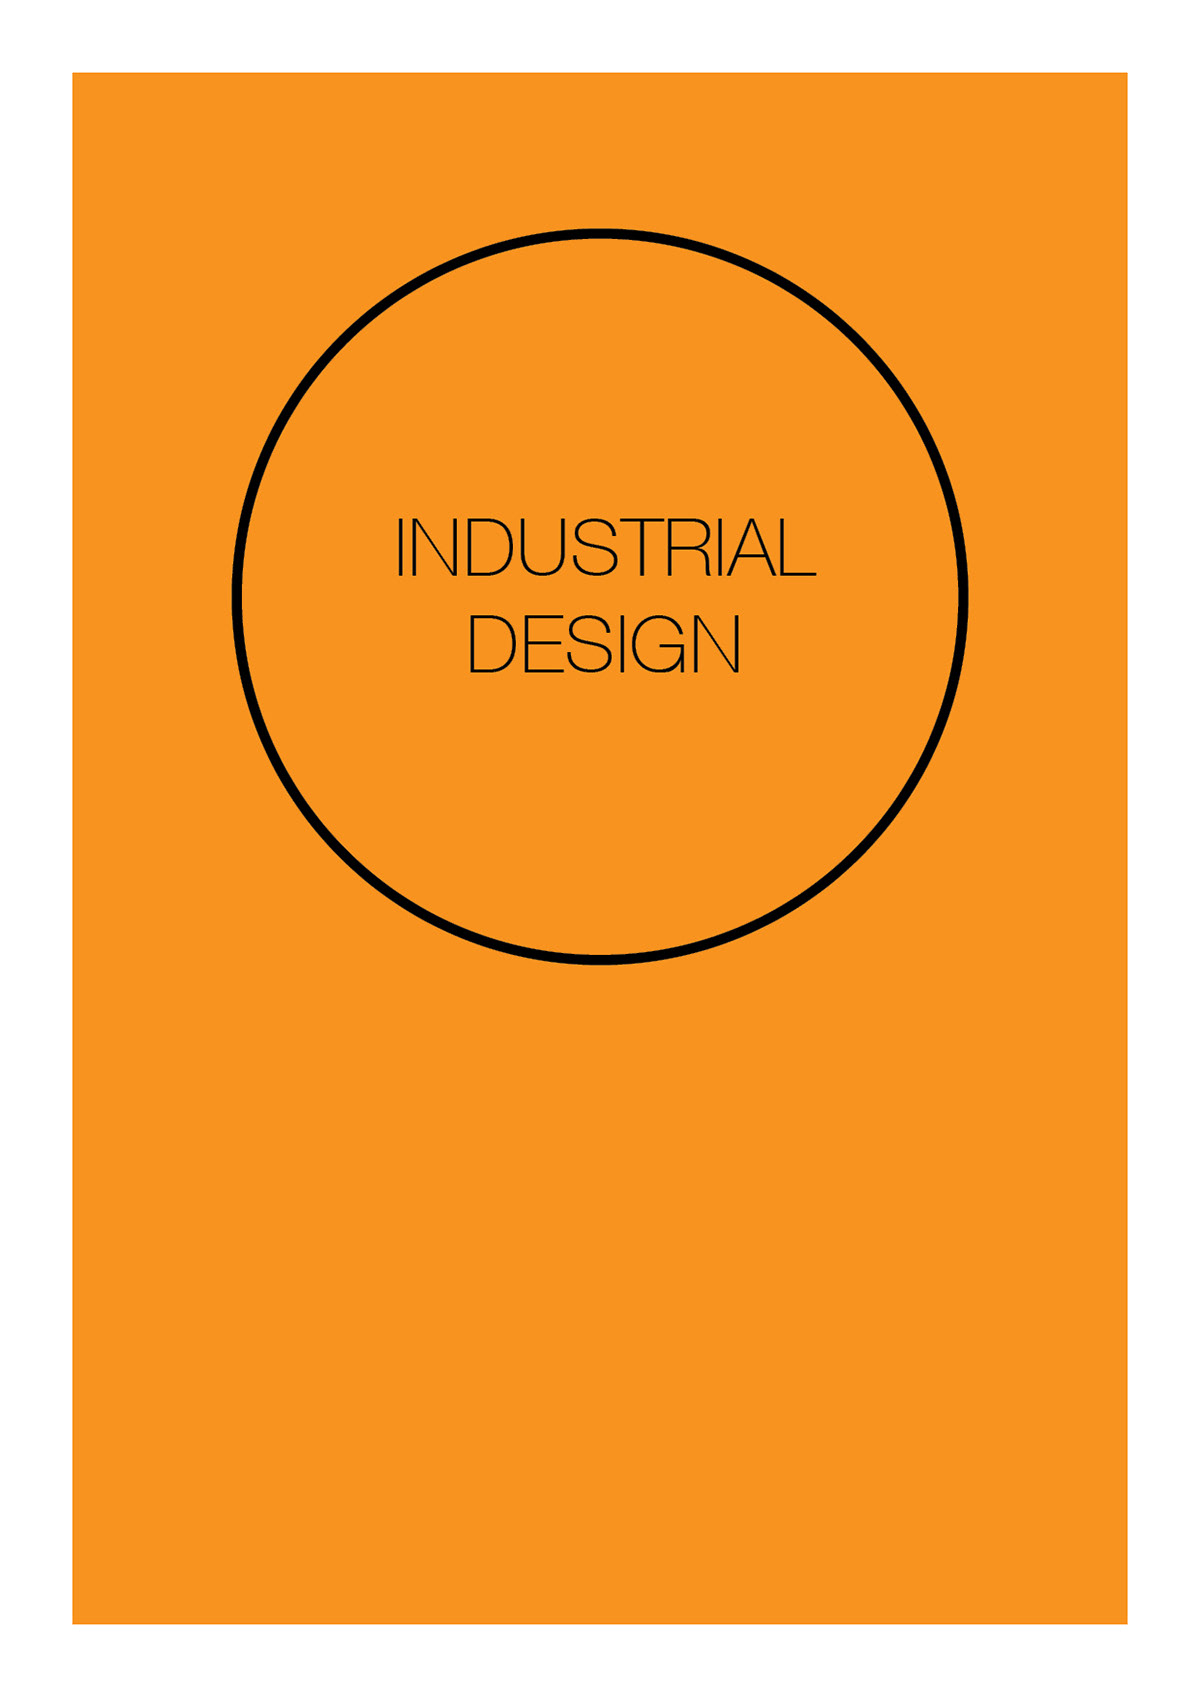 Interior graphic industrial